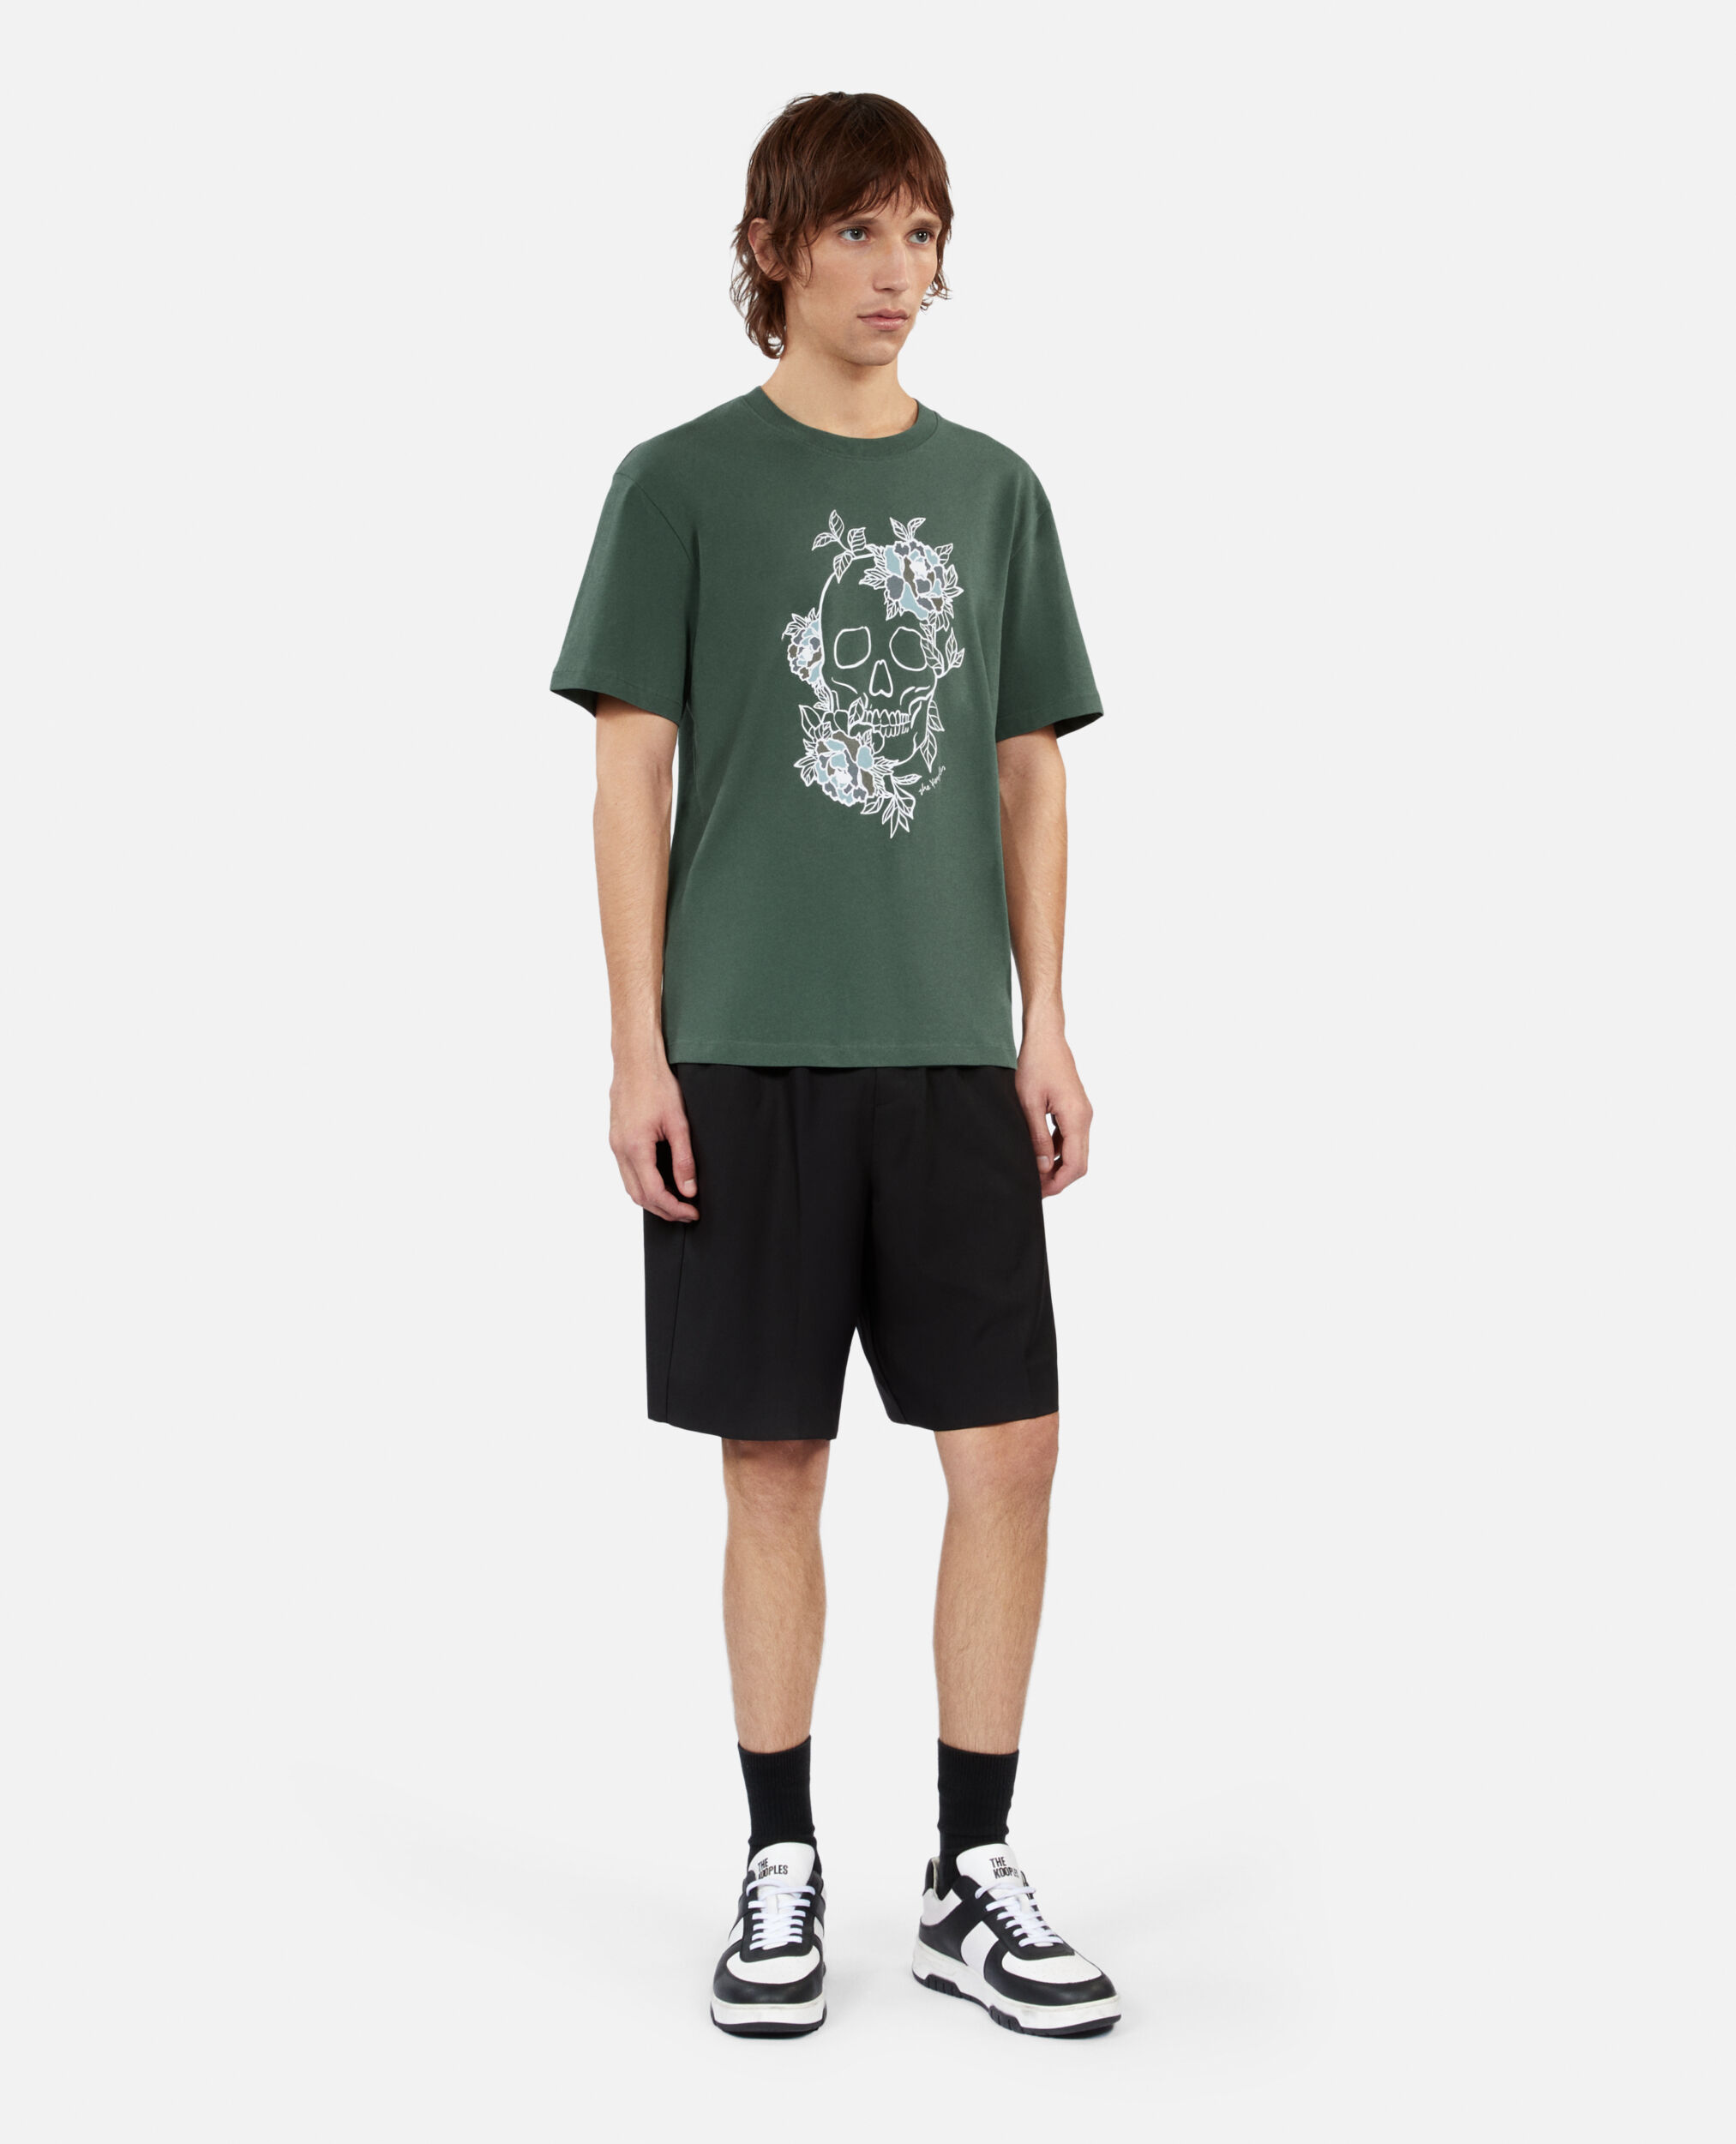 Grünes T-Shirt mit Siebdruck für Herren, FOREST, hi-res image number null